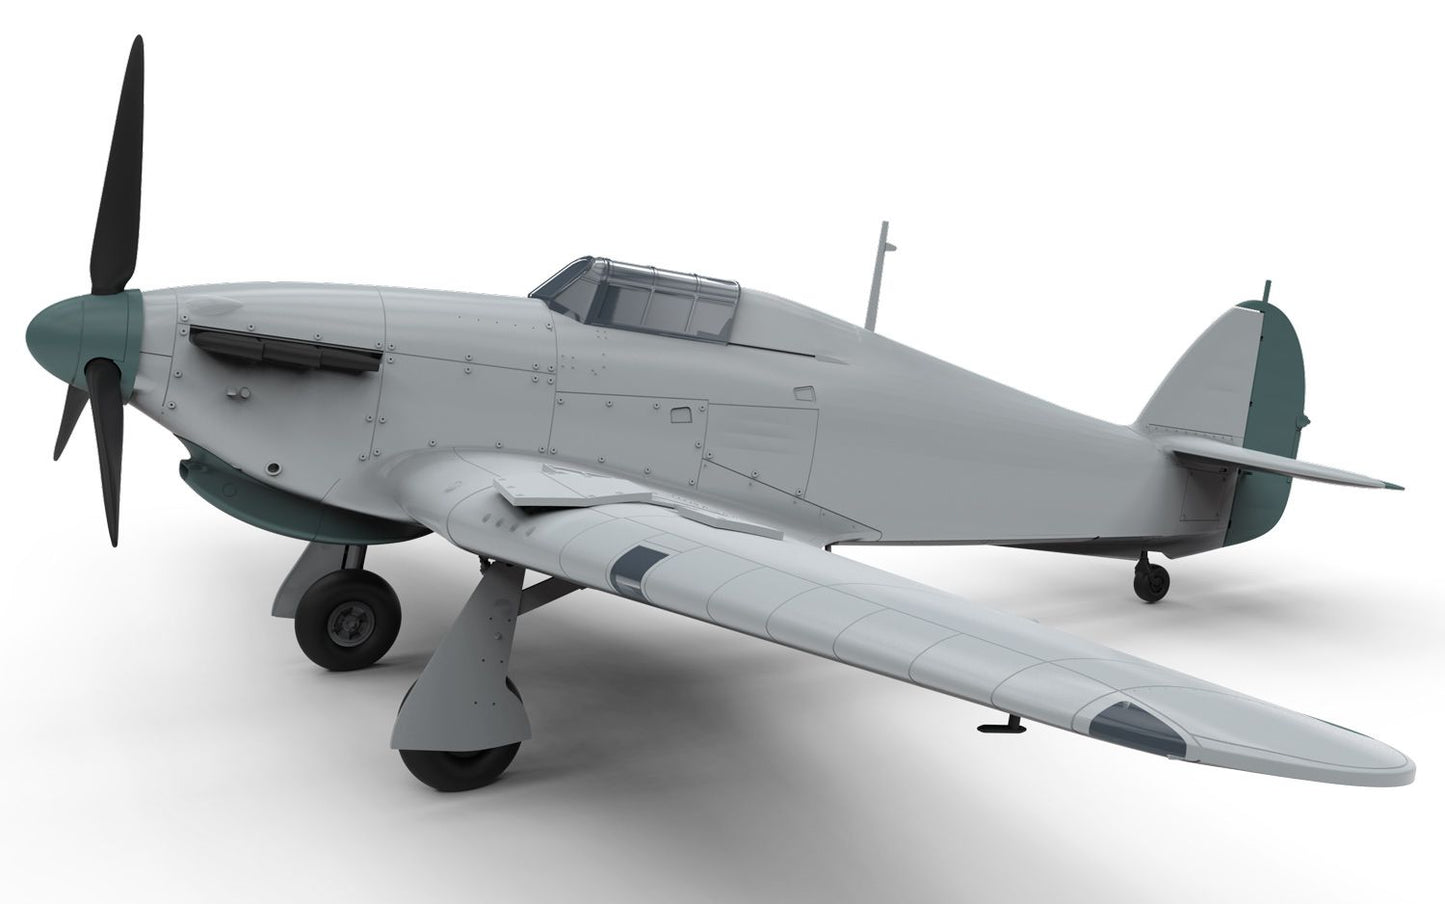 Hawker Hurricane MK.I Tropical 1:48